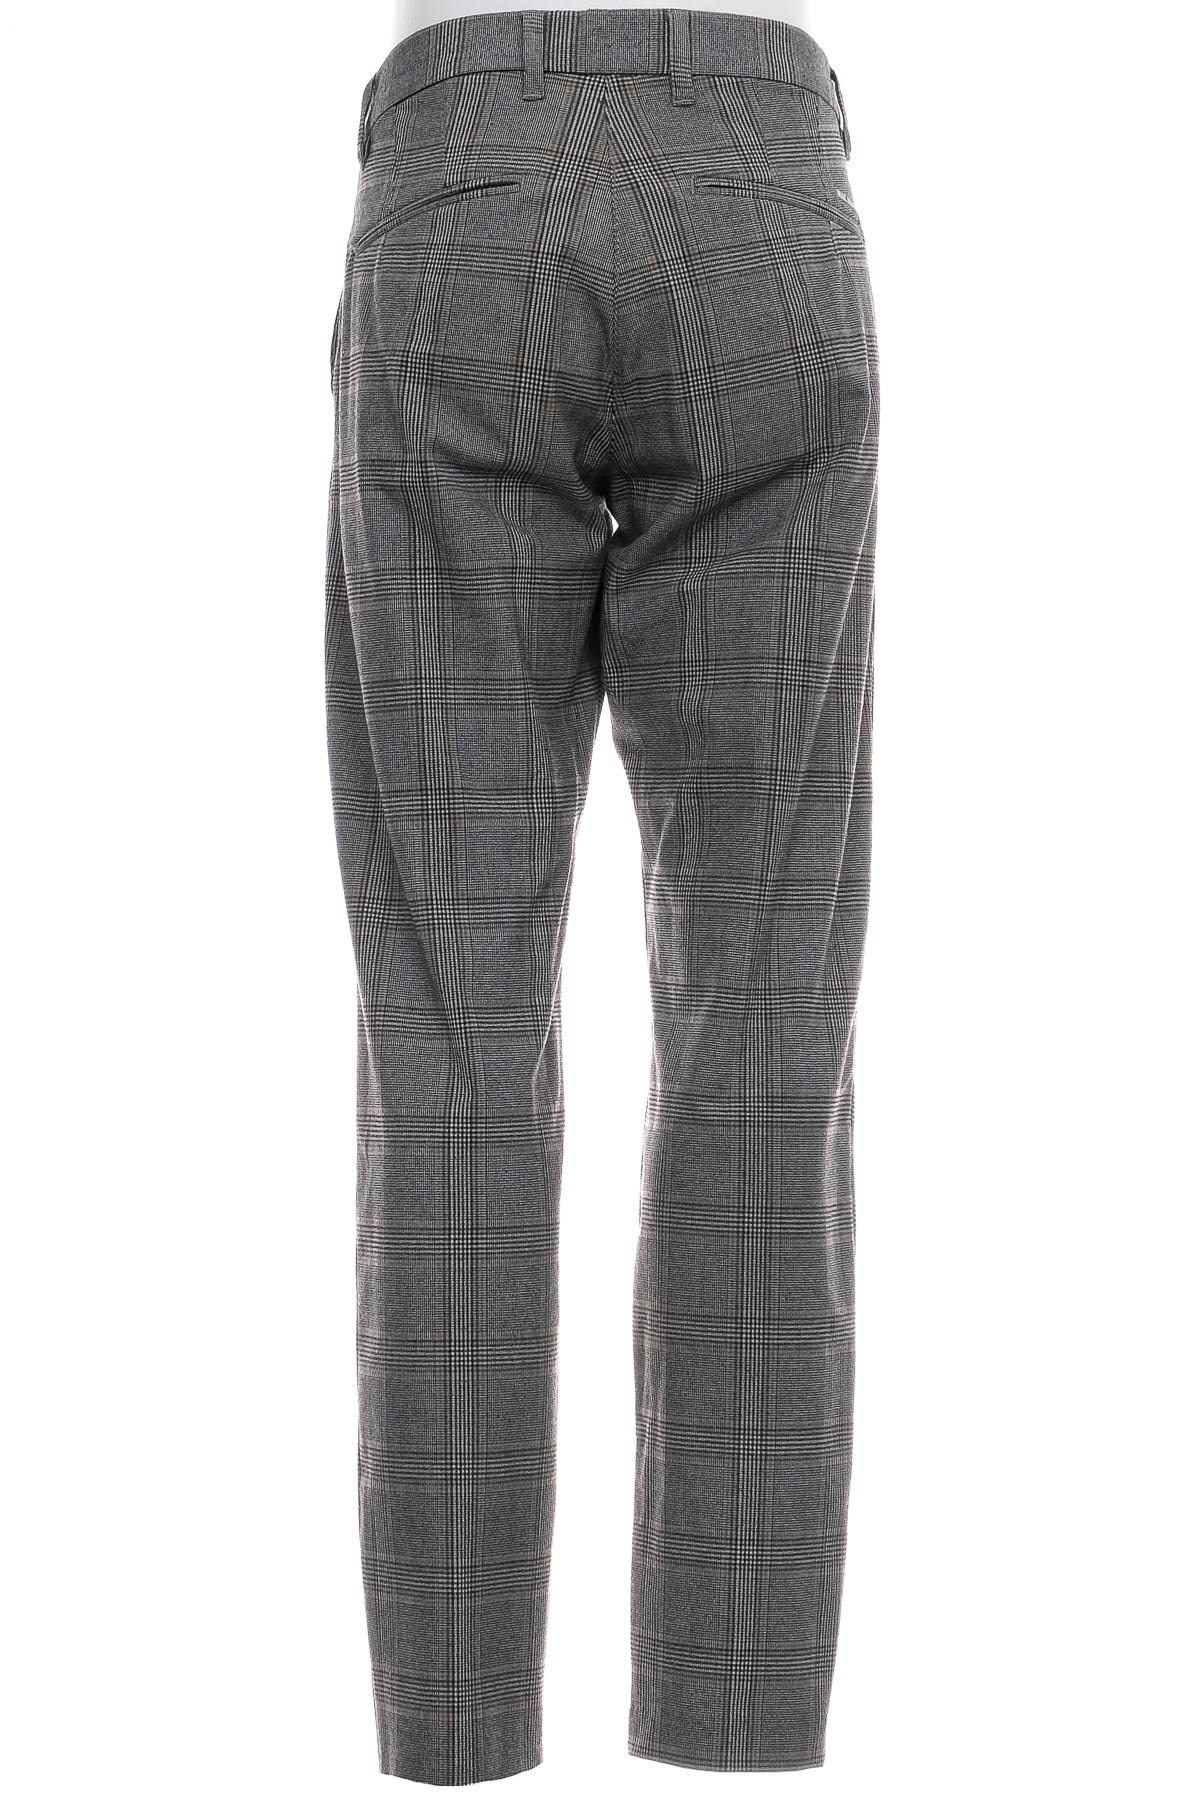 Ανδρικά παντελόνια - MAC Jeans - 1